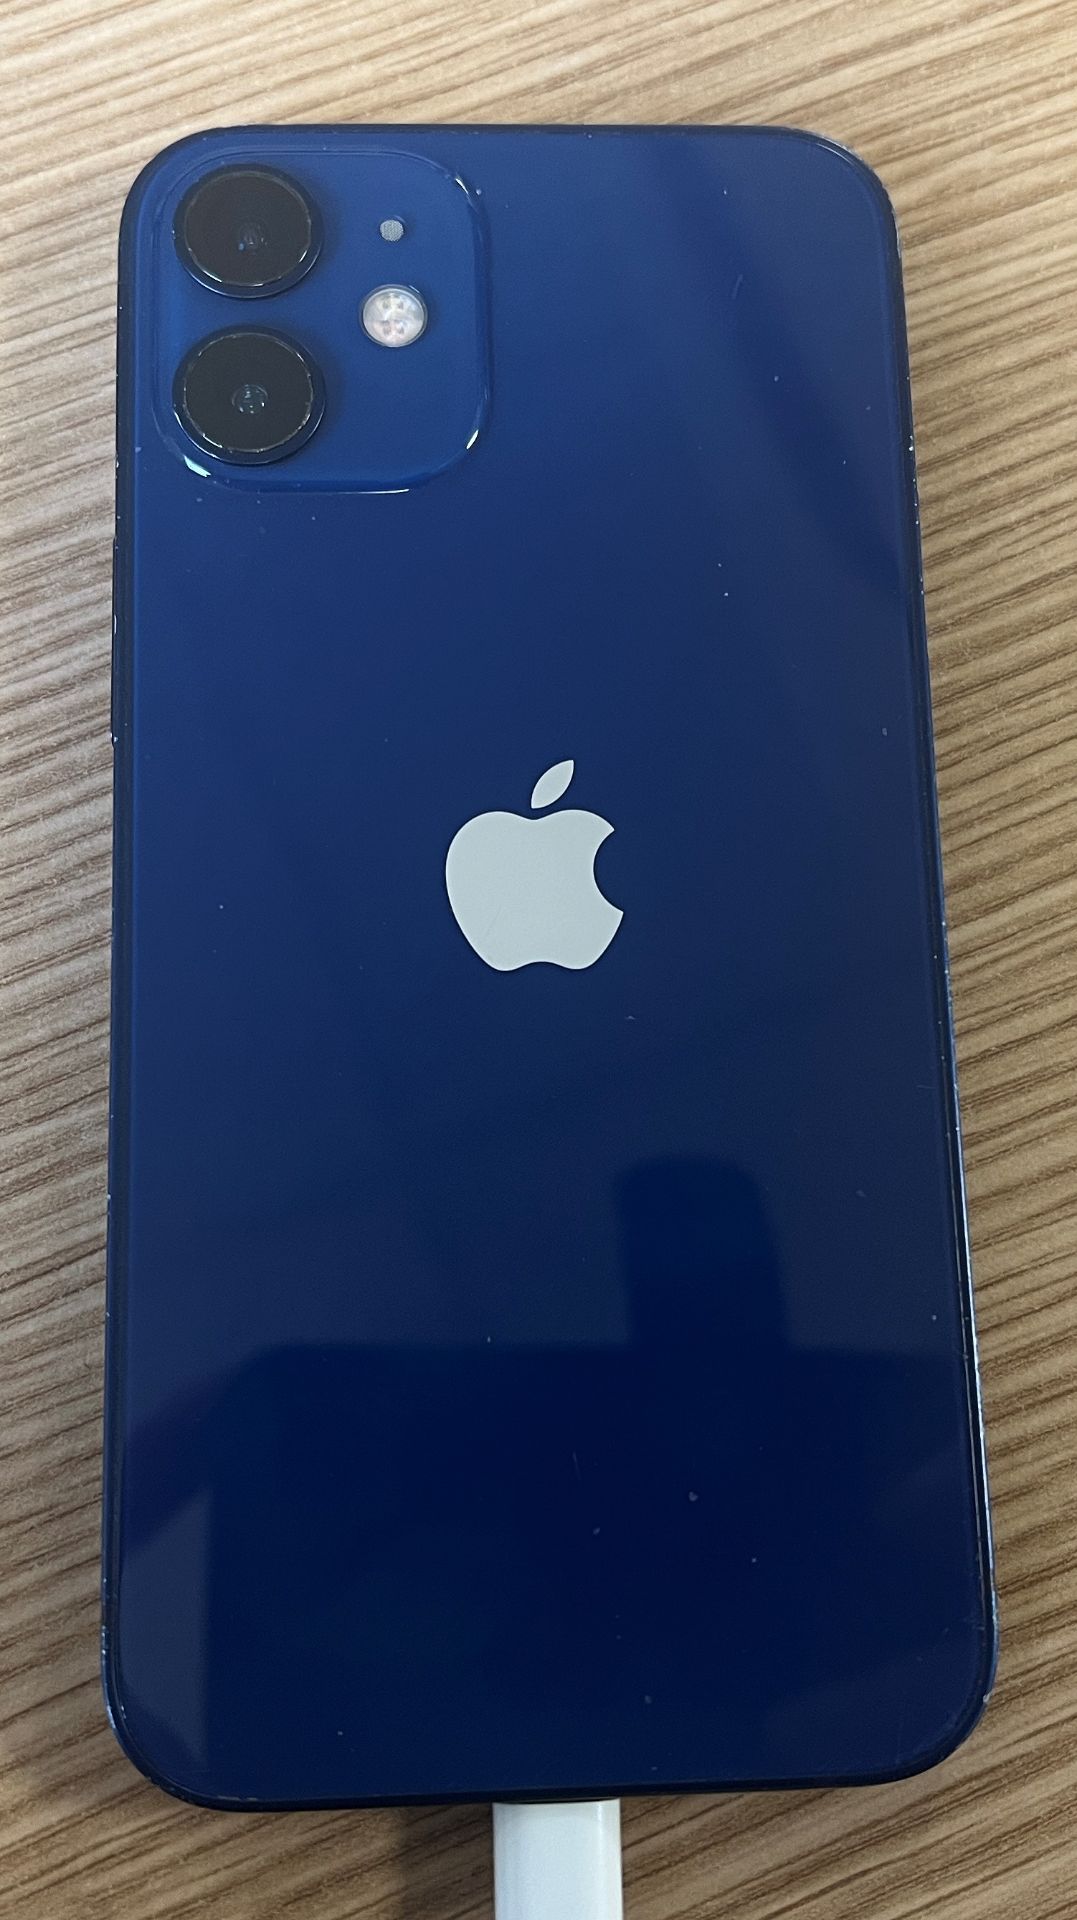 Apple iPhone 12 mini - 64GB - Blue - Unlocked - Image 3 of 6